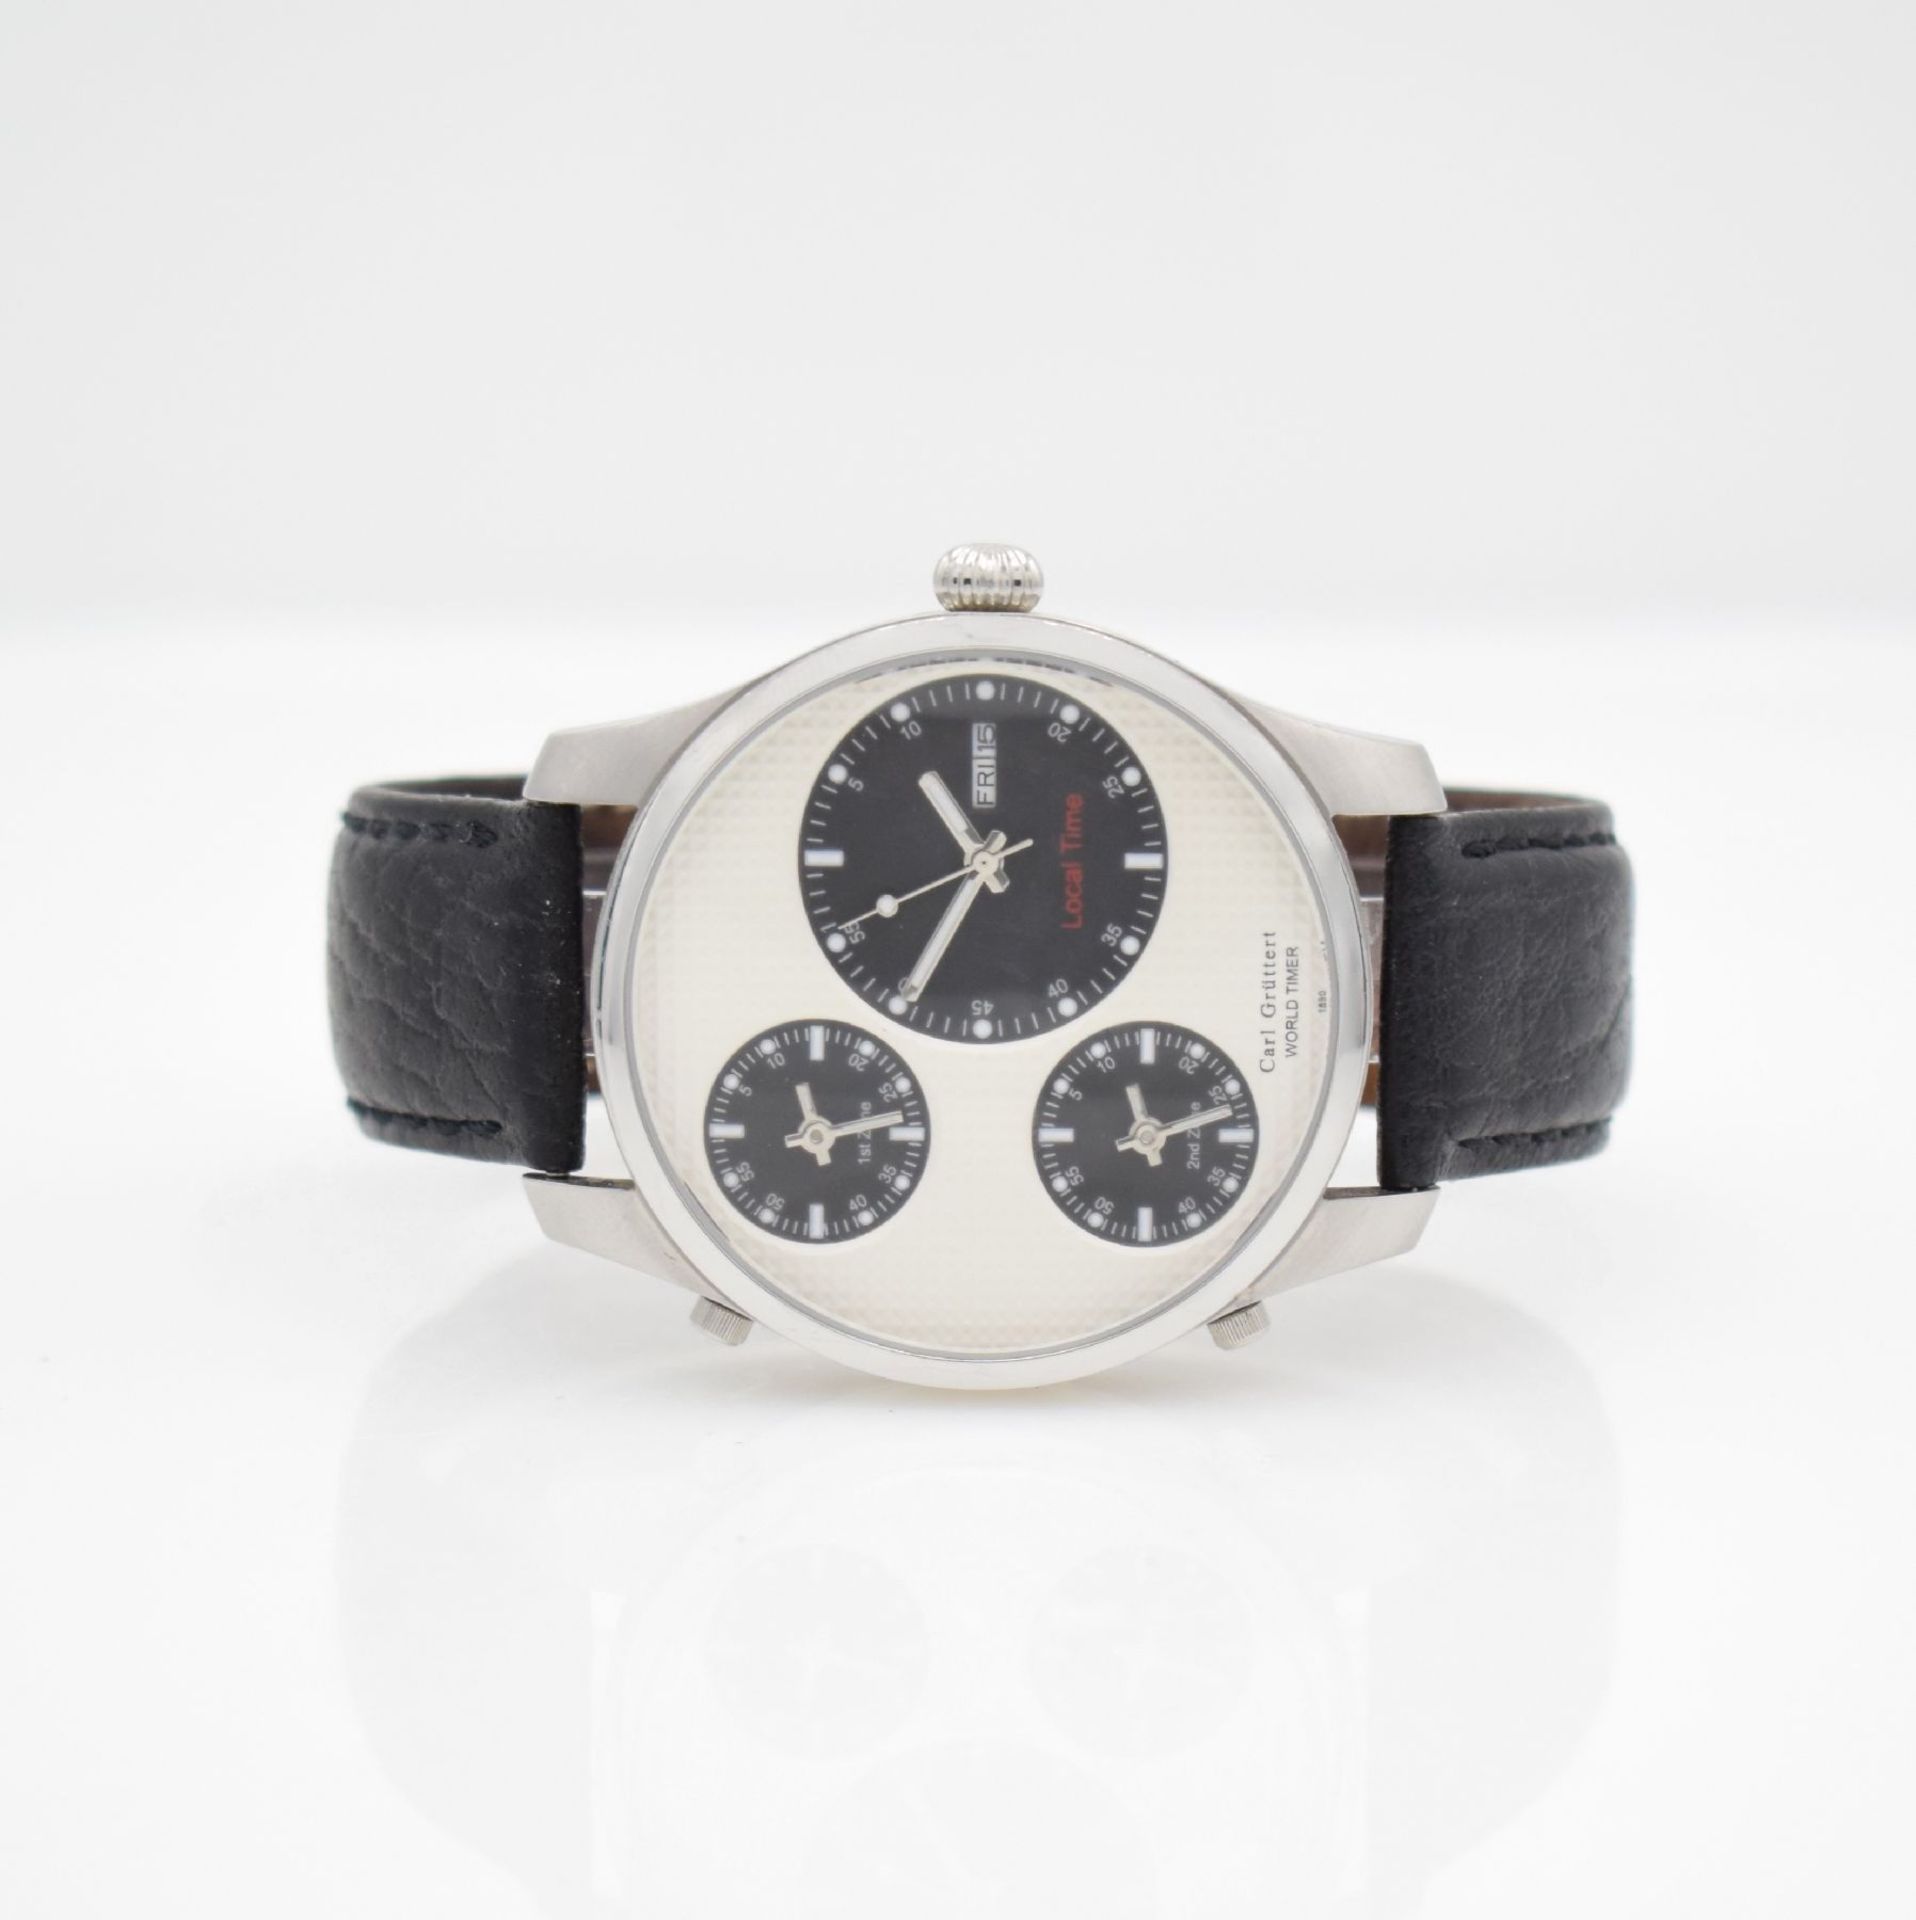 CARL GRÜTTERT Worldtimer limited gents- wristwatch in steel, Switzerland around 2000, large